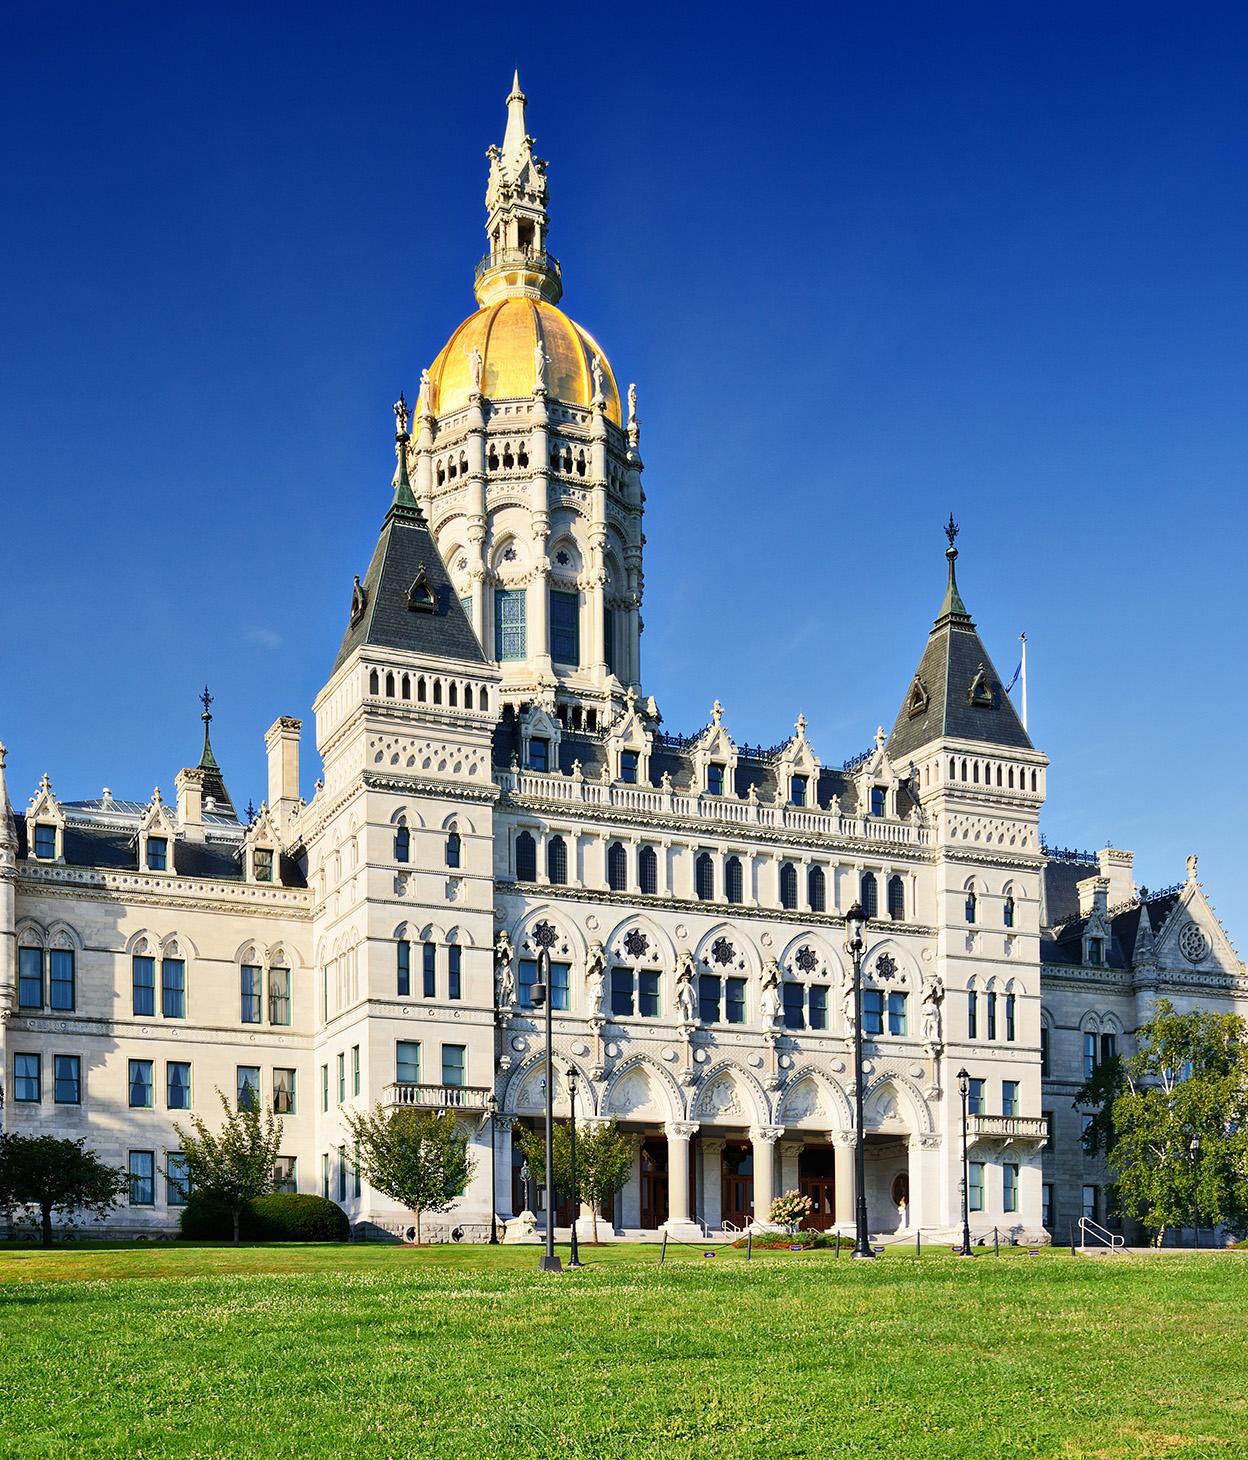 Capitolio del Estado de Connecticut, que se encuentra en Hartford (Connecticut).